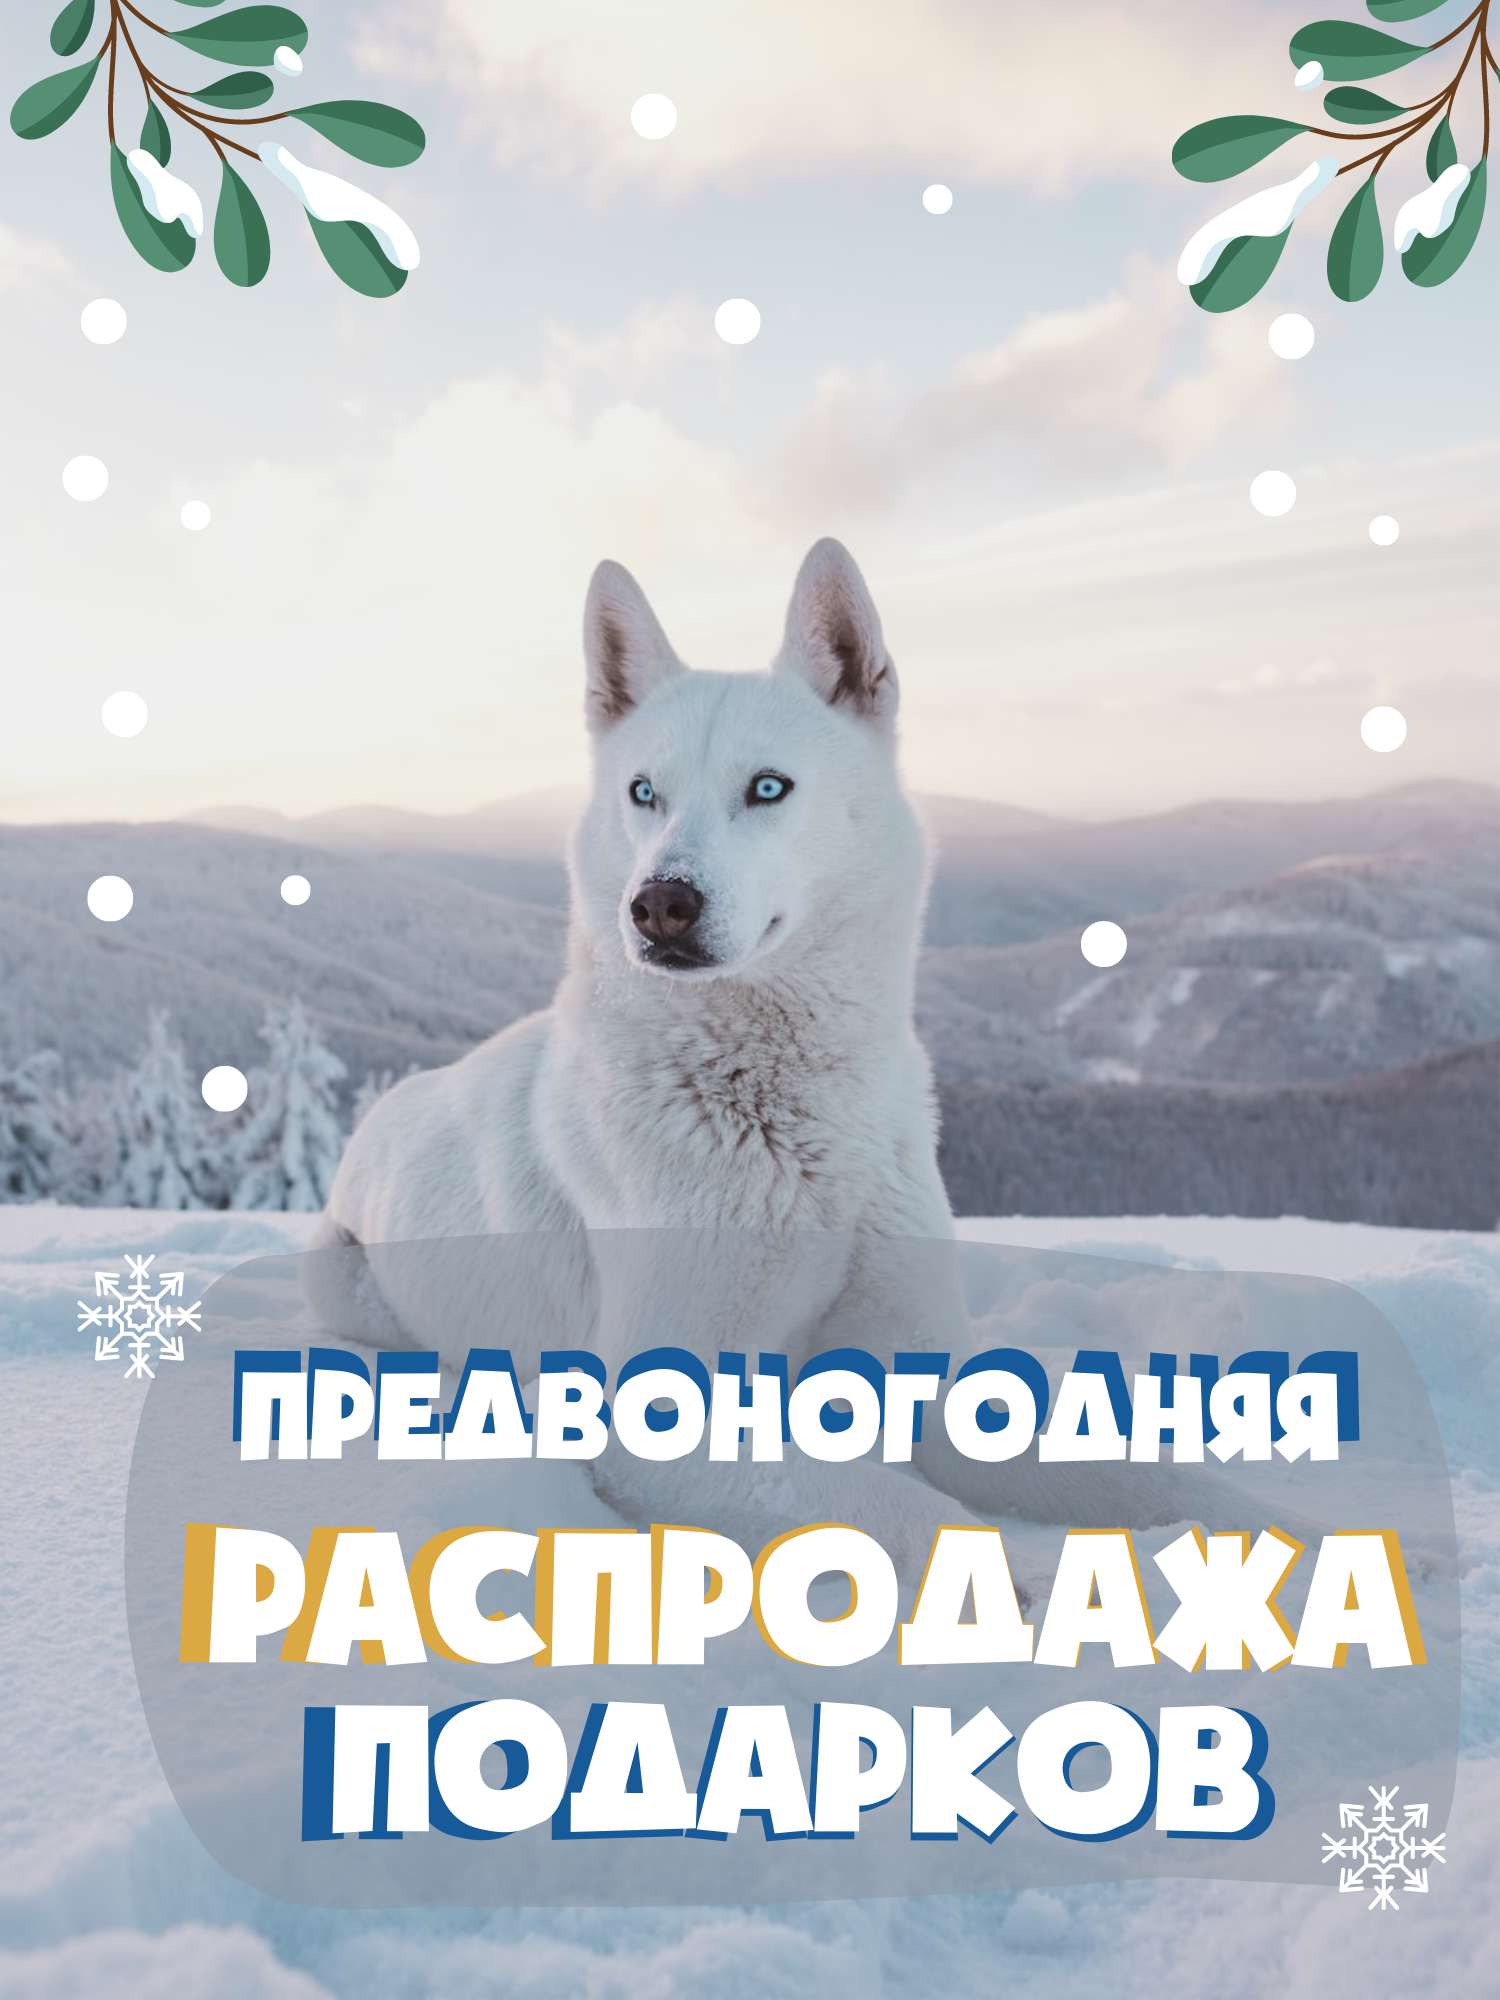 Новогодняя праздничная Открытка  в нежно-голубых тонах с белой собакой